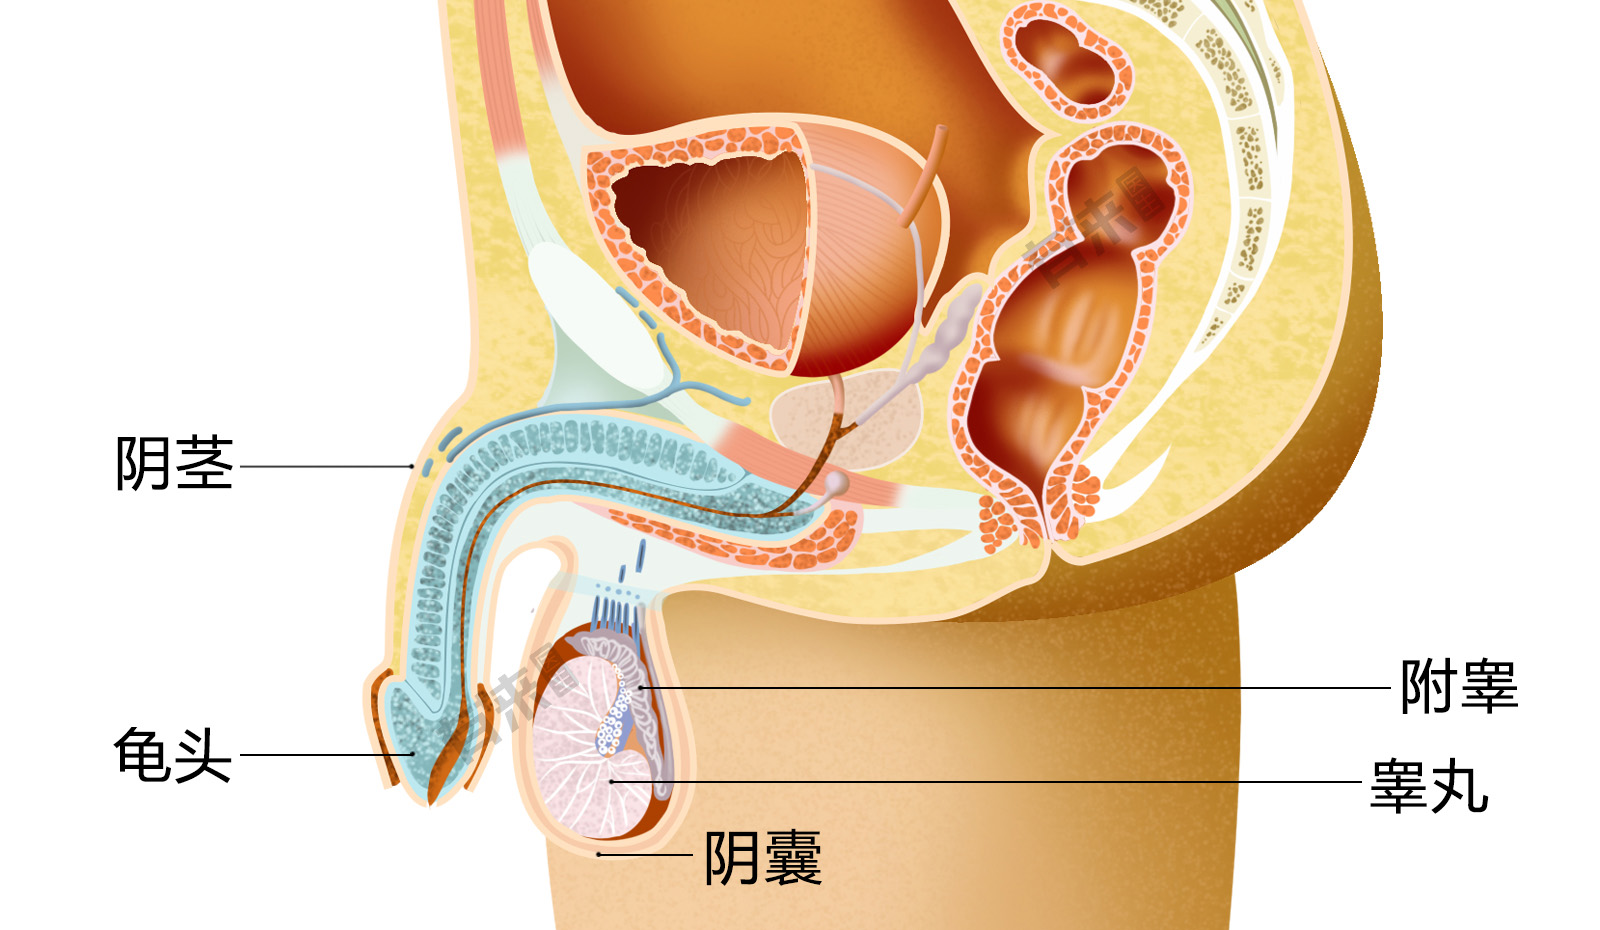 睾丸位置图解图片